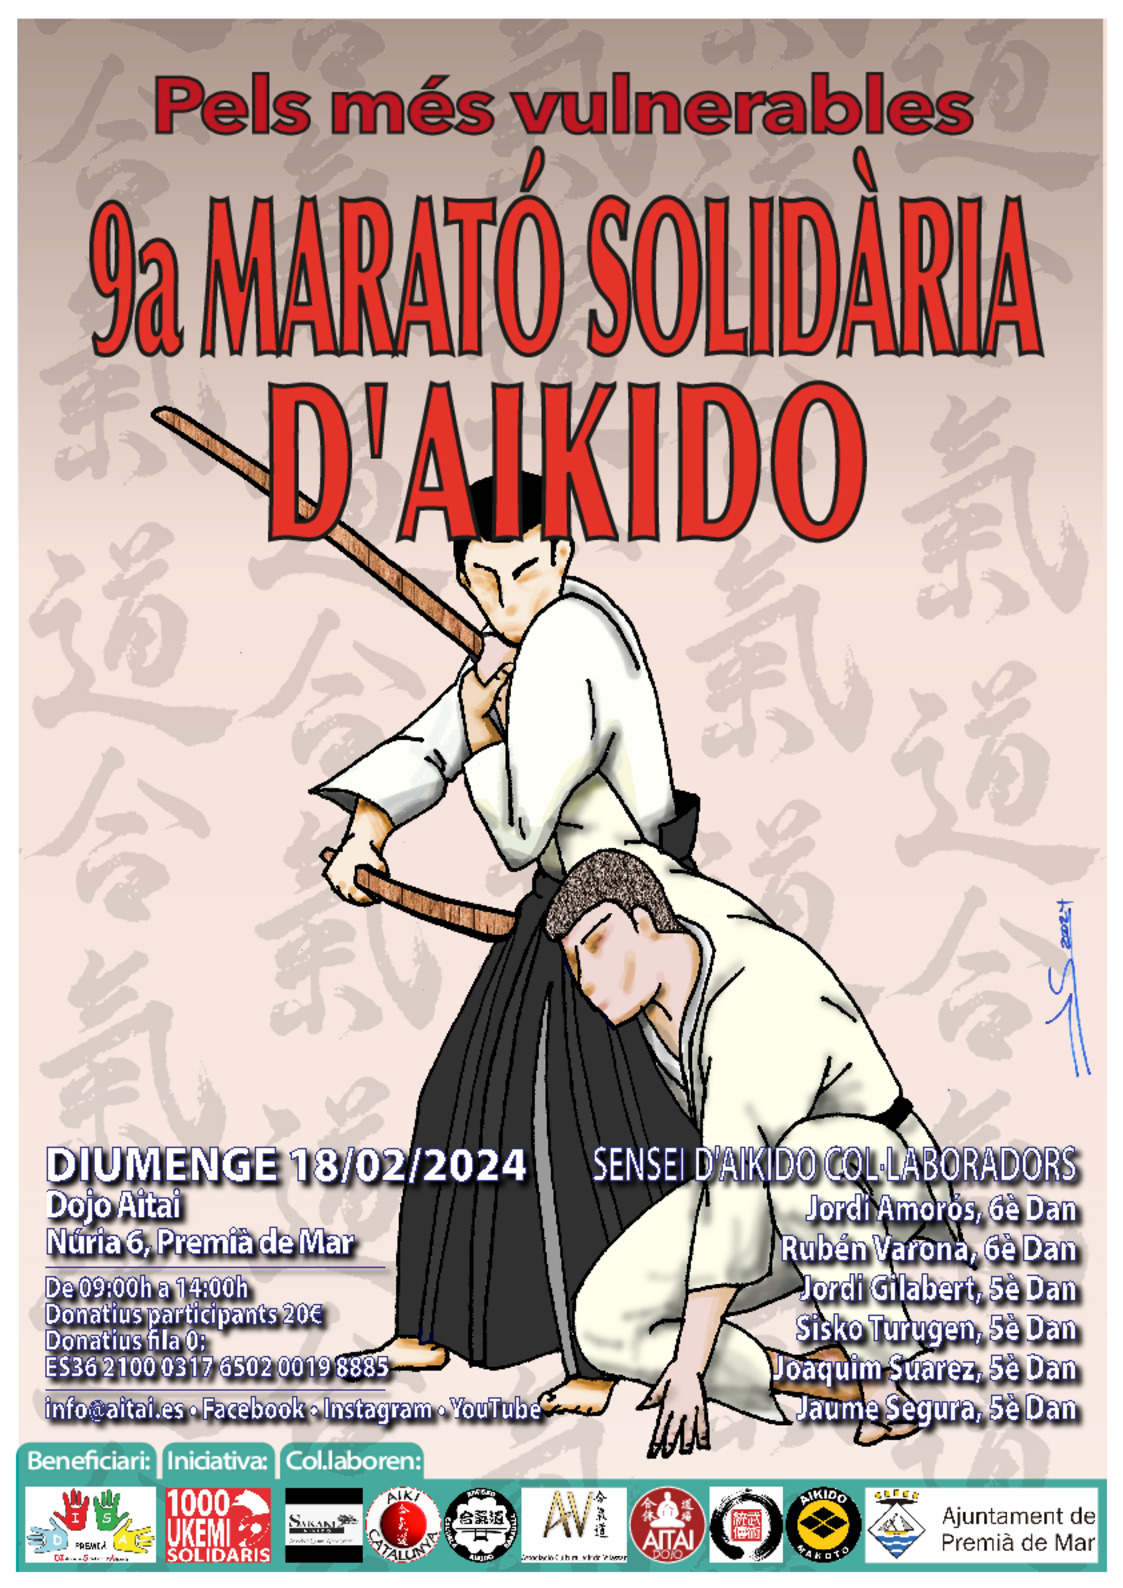 9a Marat solidria d'Aikido